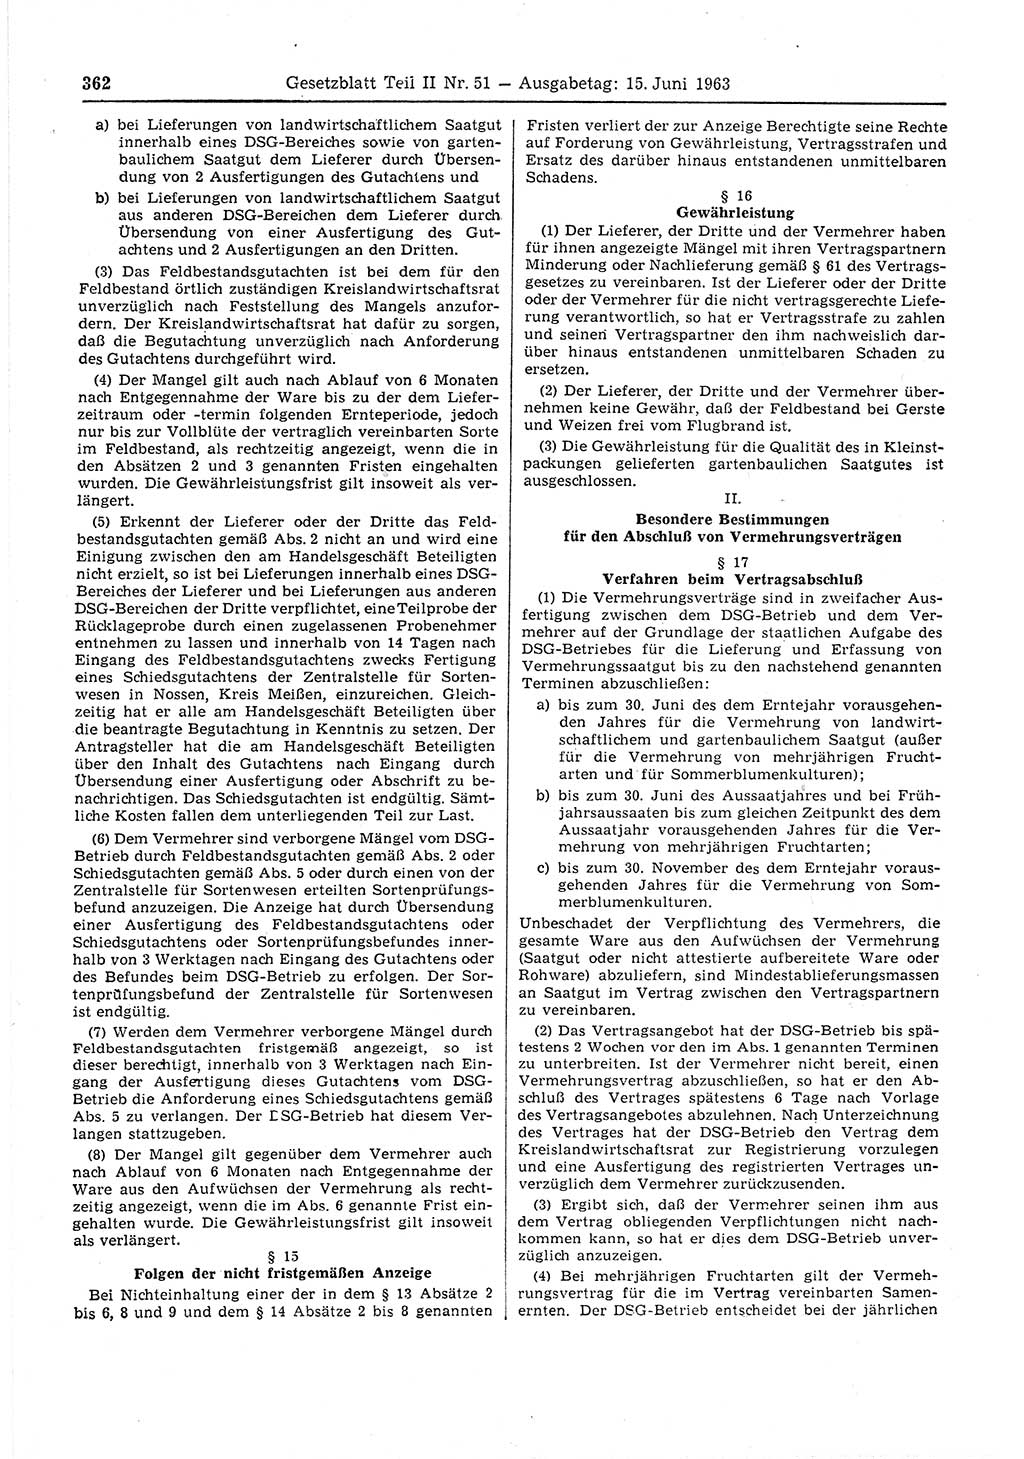 Gesetzblatt (GBl.) der Deutschen Demokratischen Republik (DDR) Teil ⅠⅠ 1963, Seite 362 (GBl. DDR ⅠⅠ 1963, S. 362)